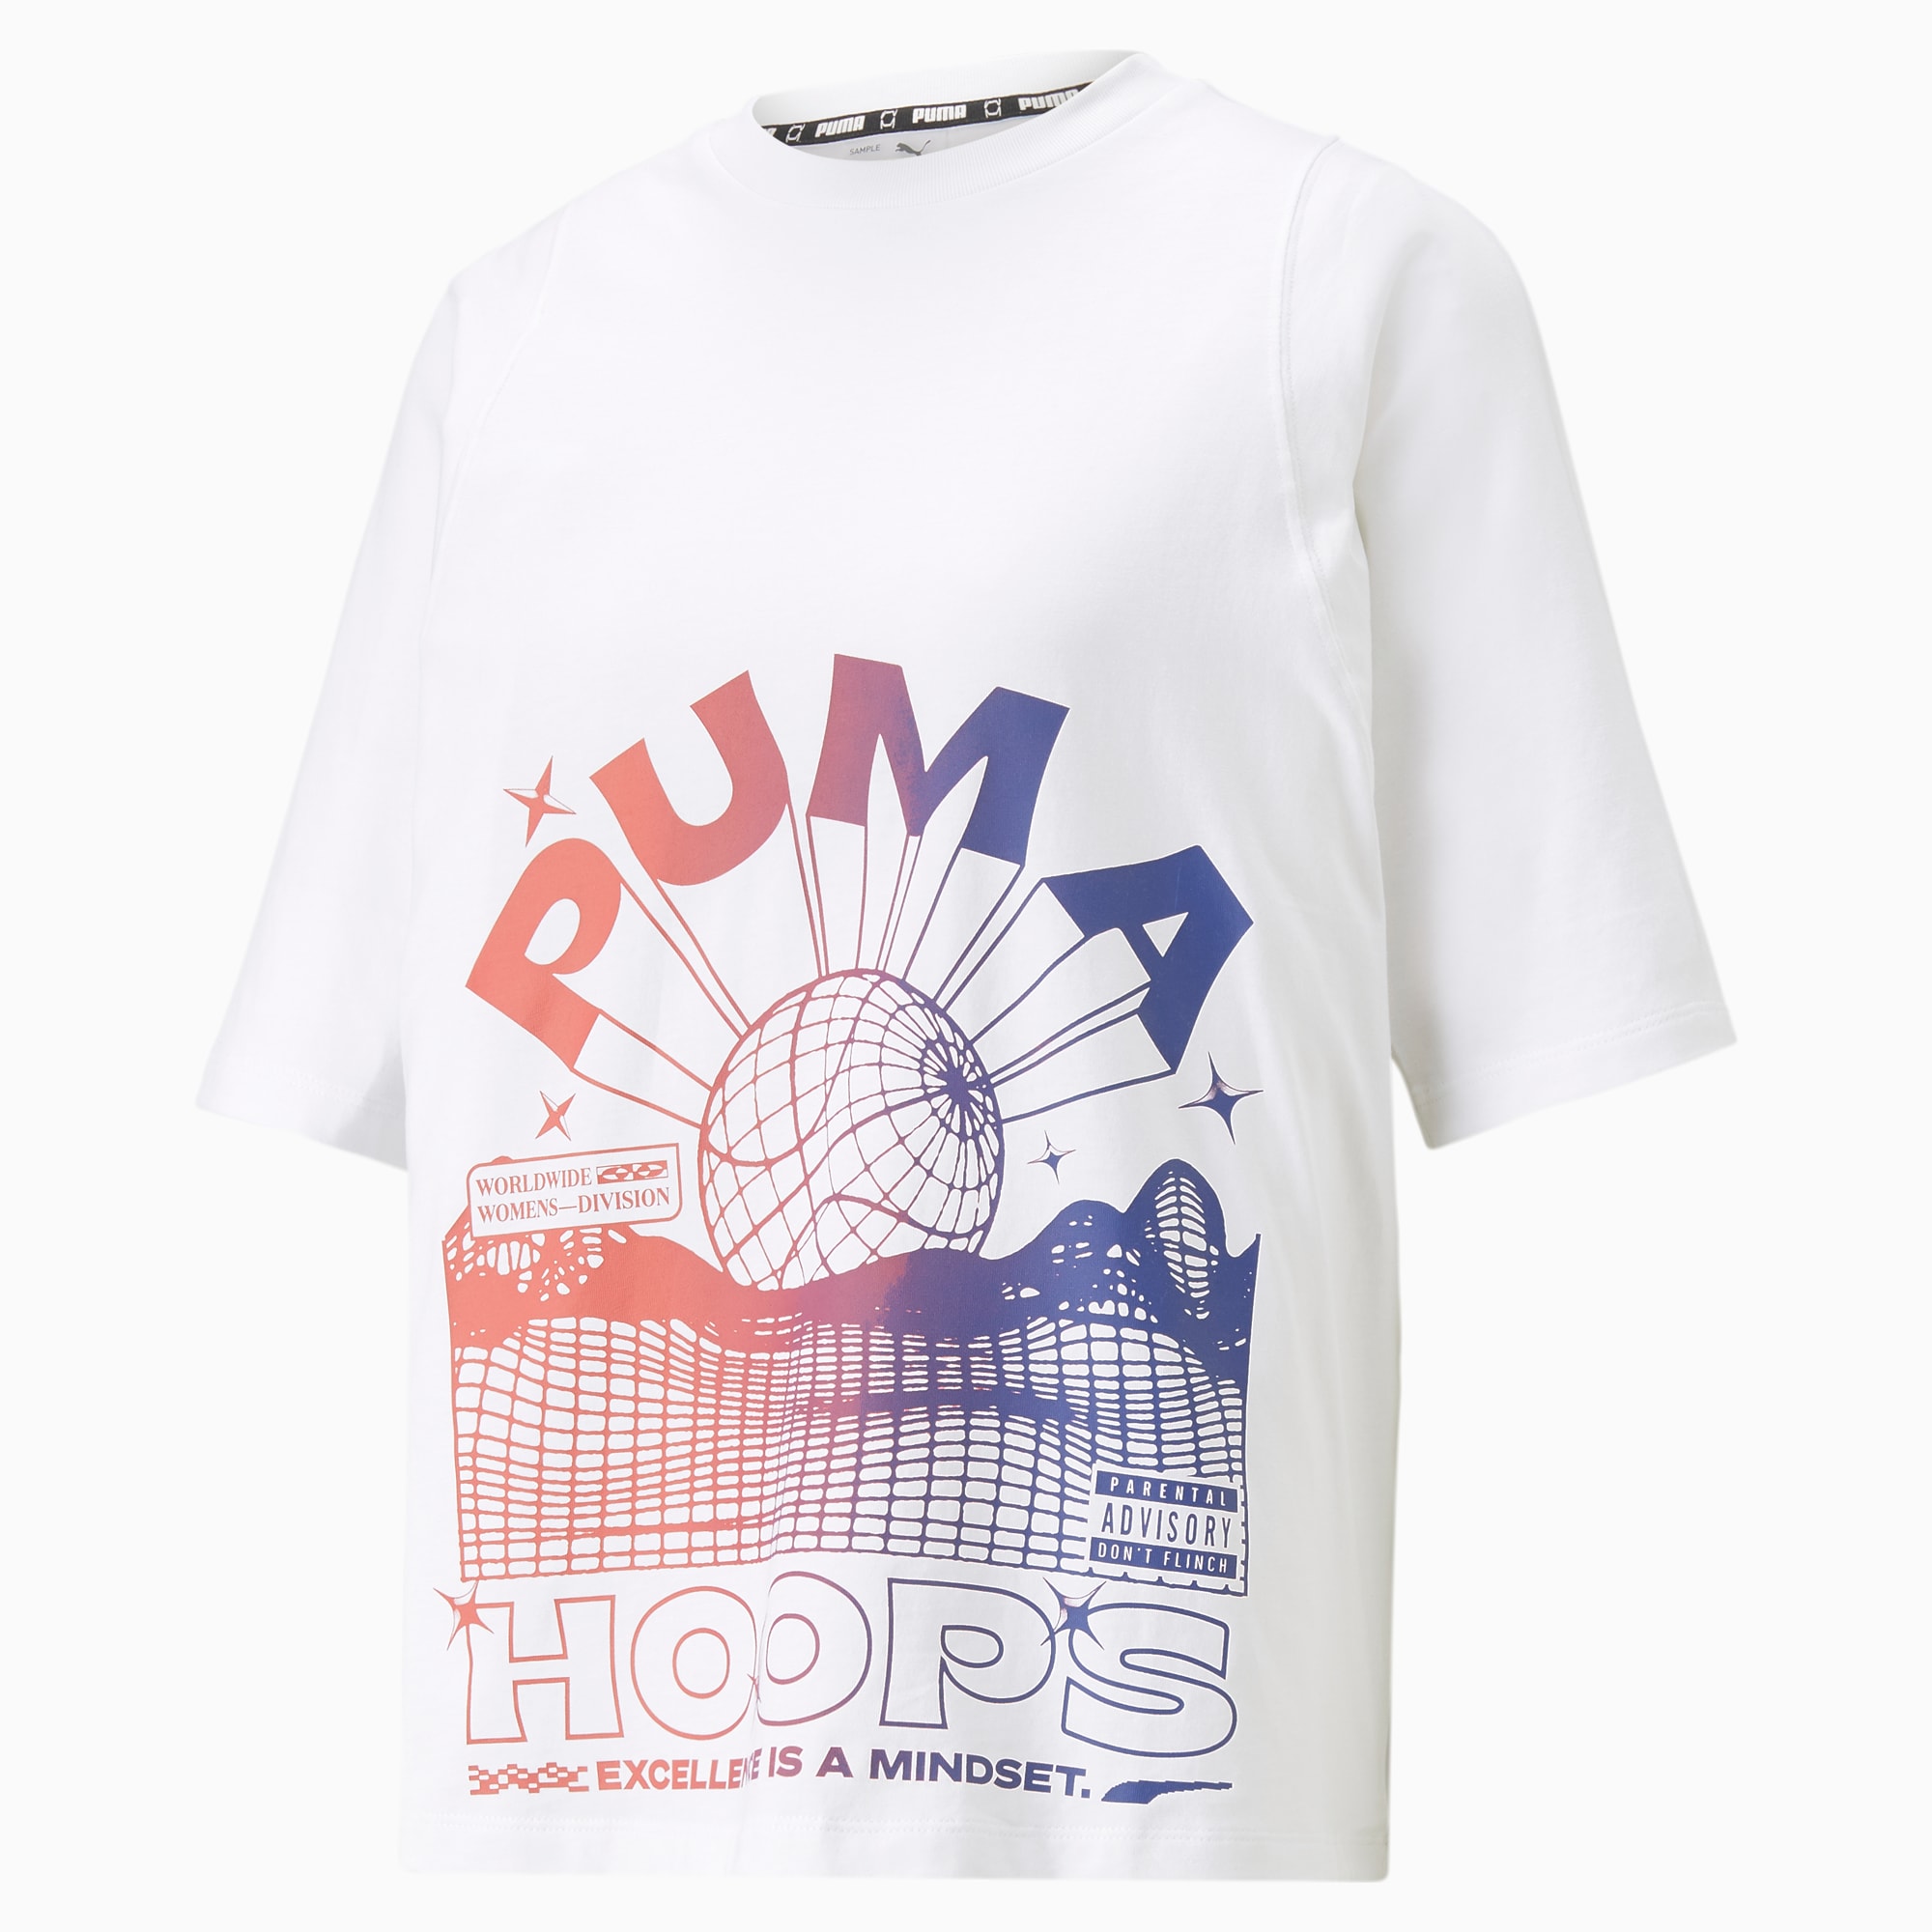 Puma Women's Strong Side Basketball T-Shirt